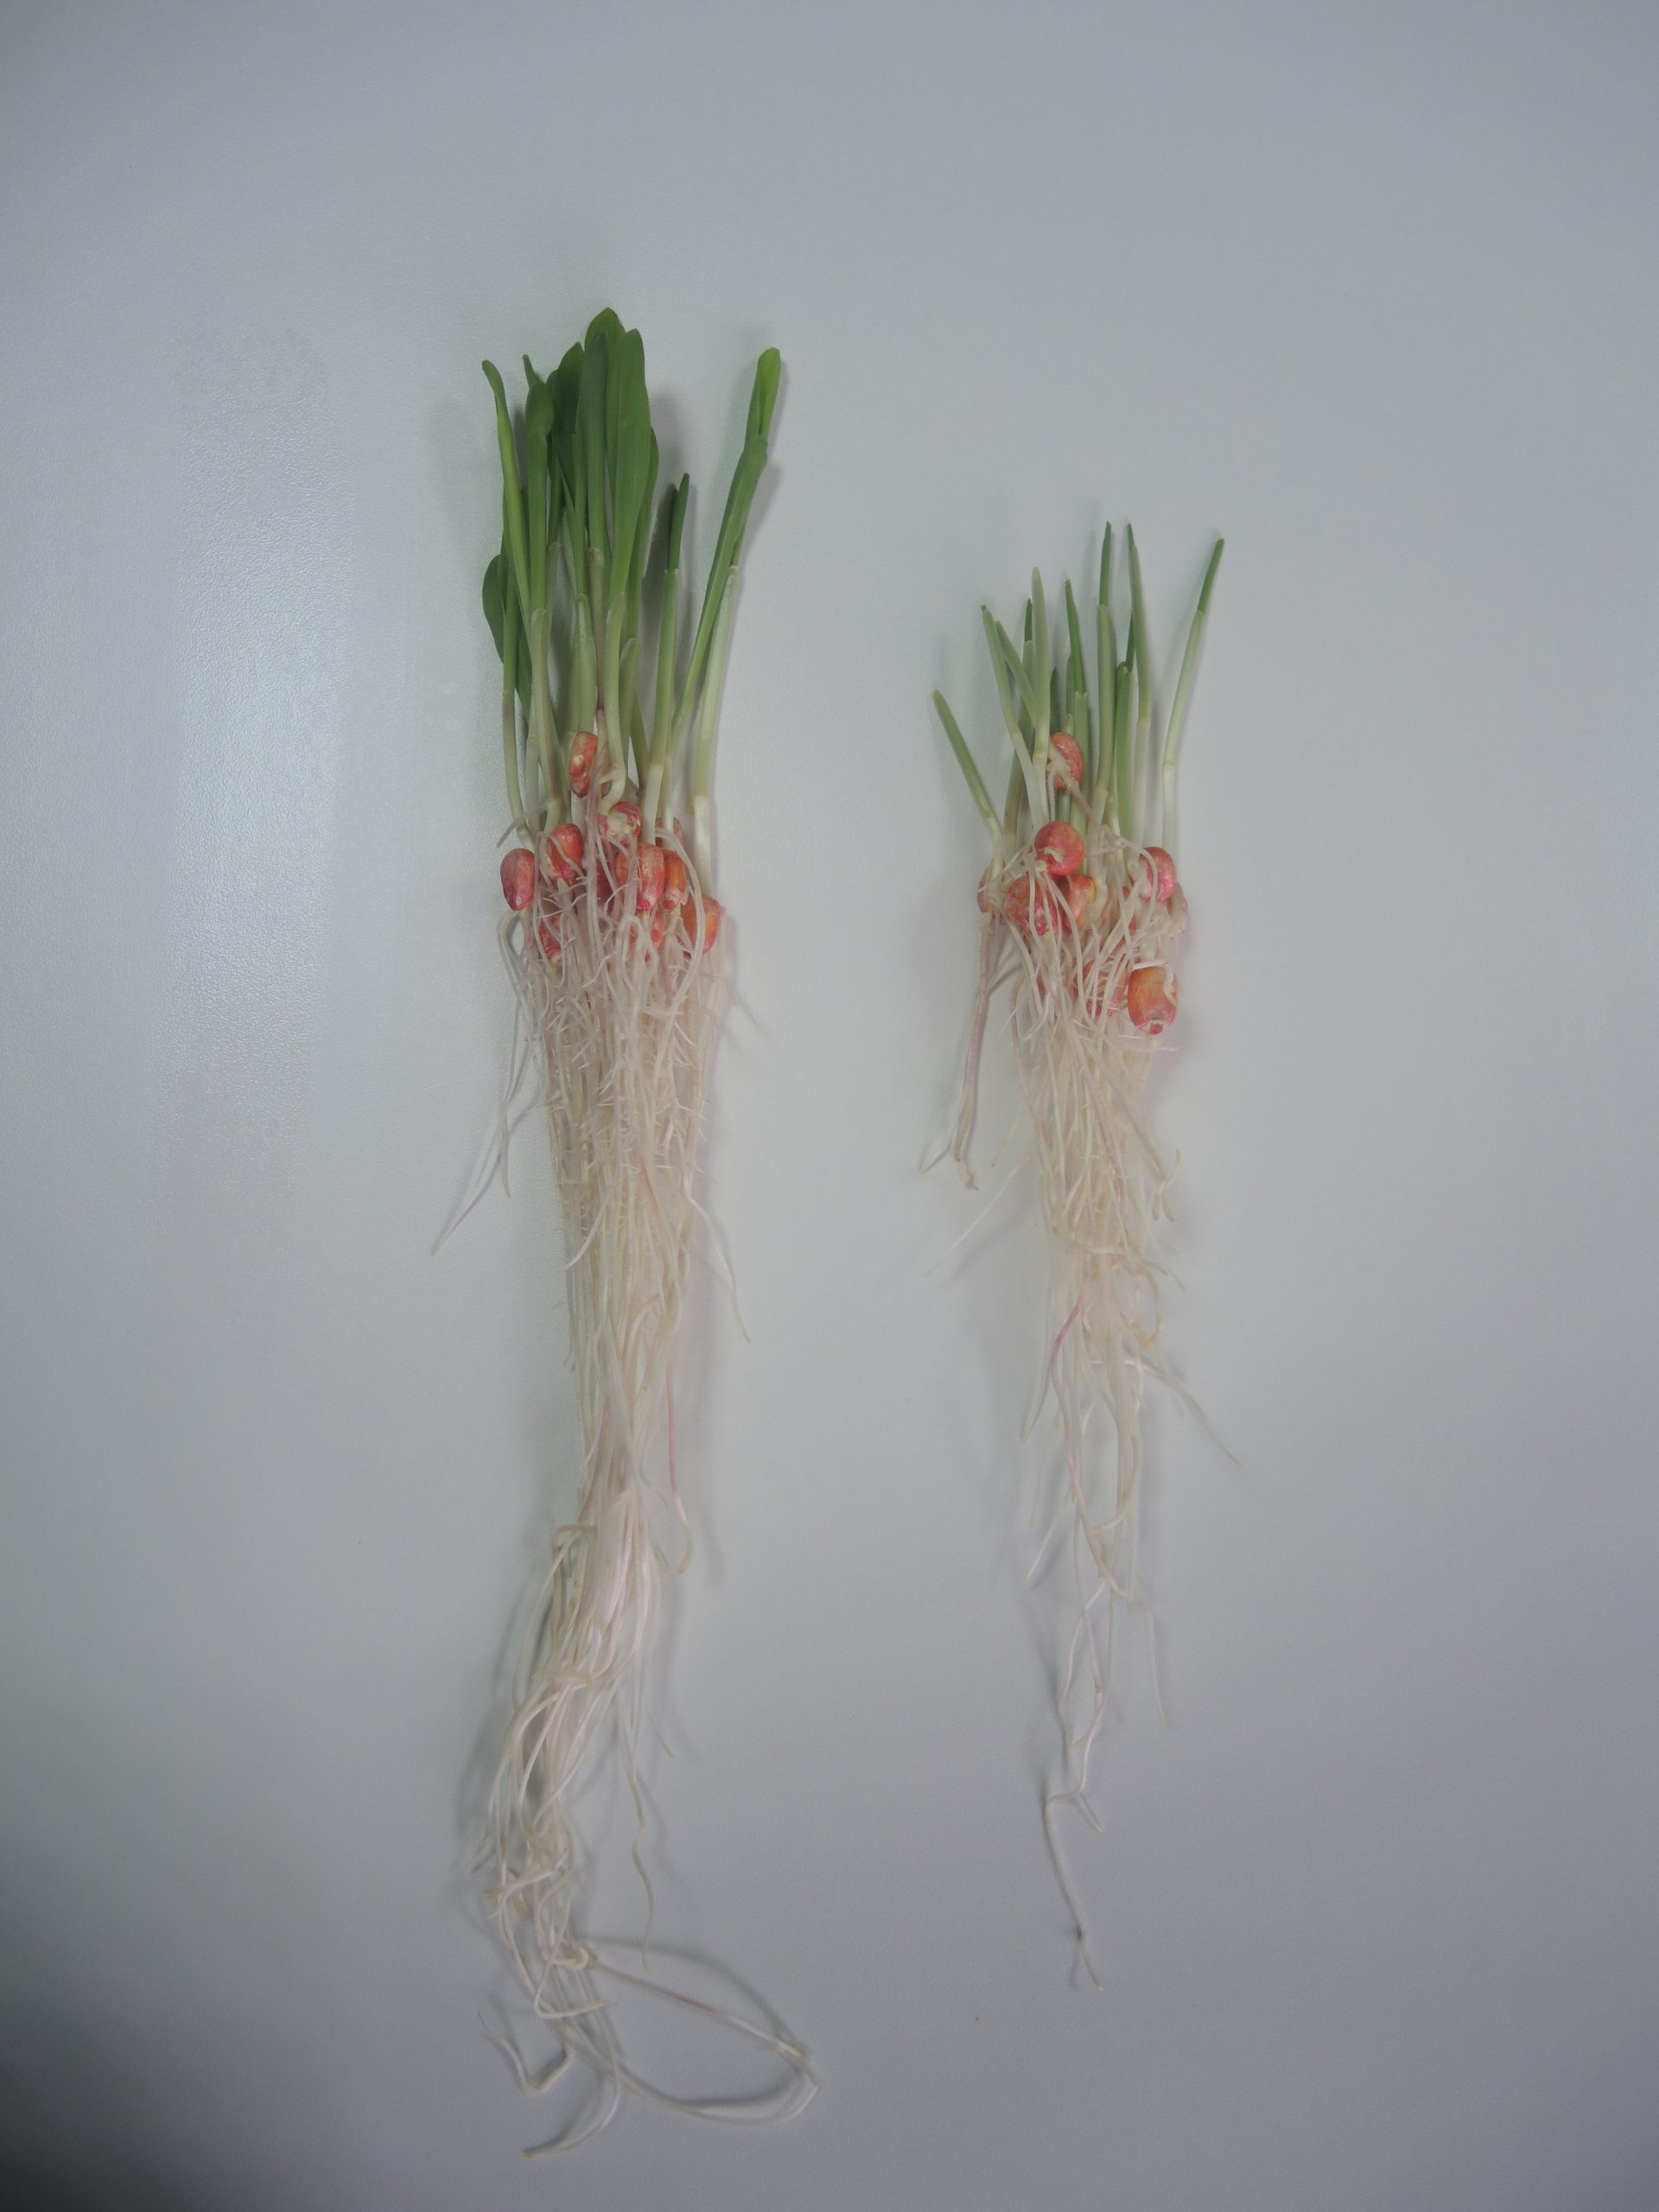 Slavol S i Rizol za soju – za stimulaciju klijanja semena, ujednačenog nicanja i jačeg korenovog sistema